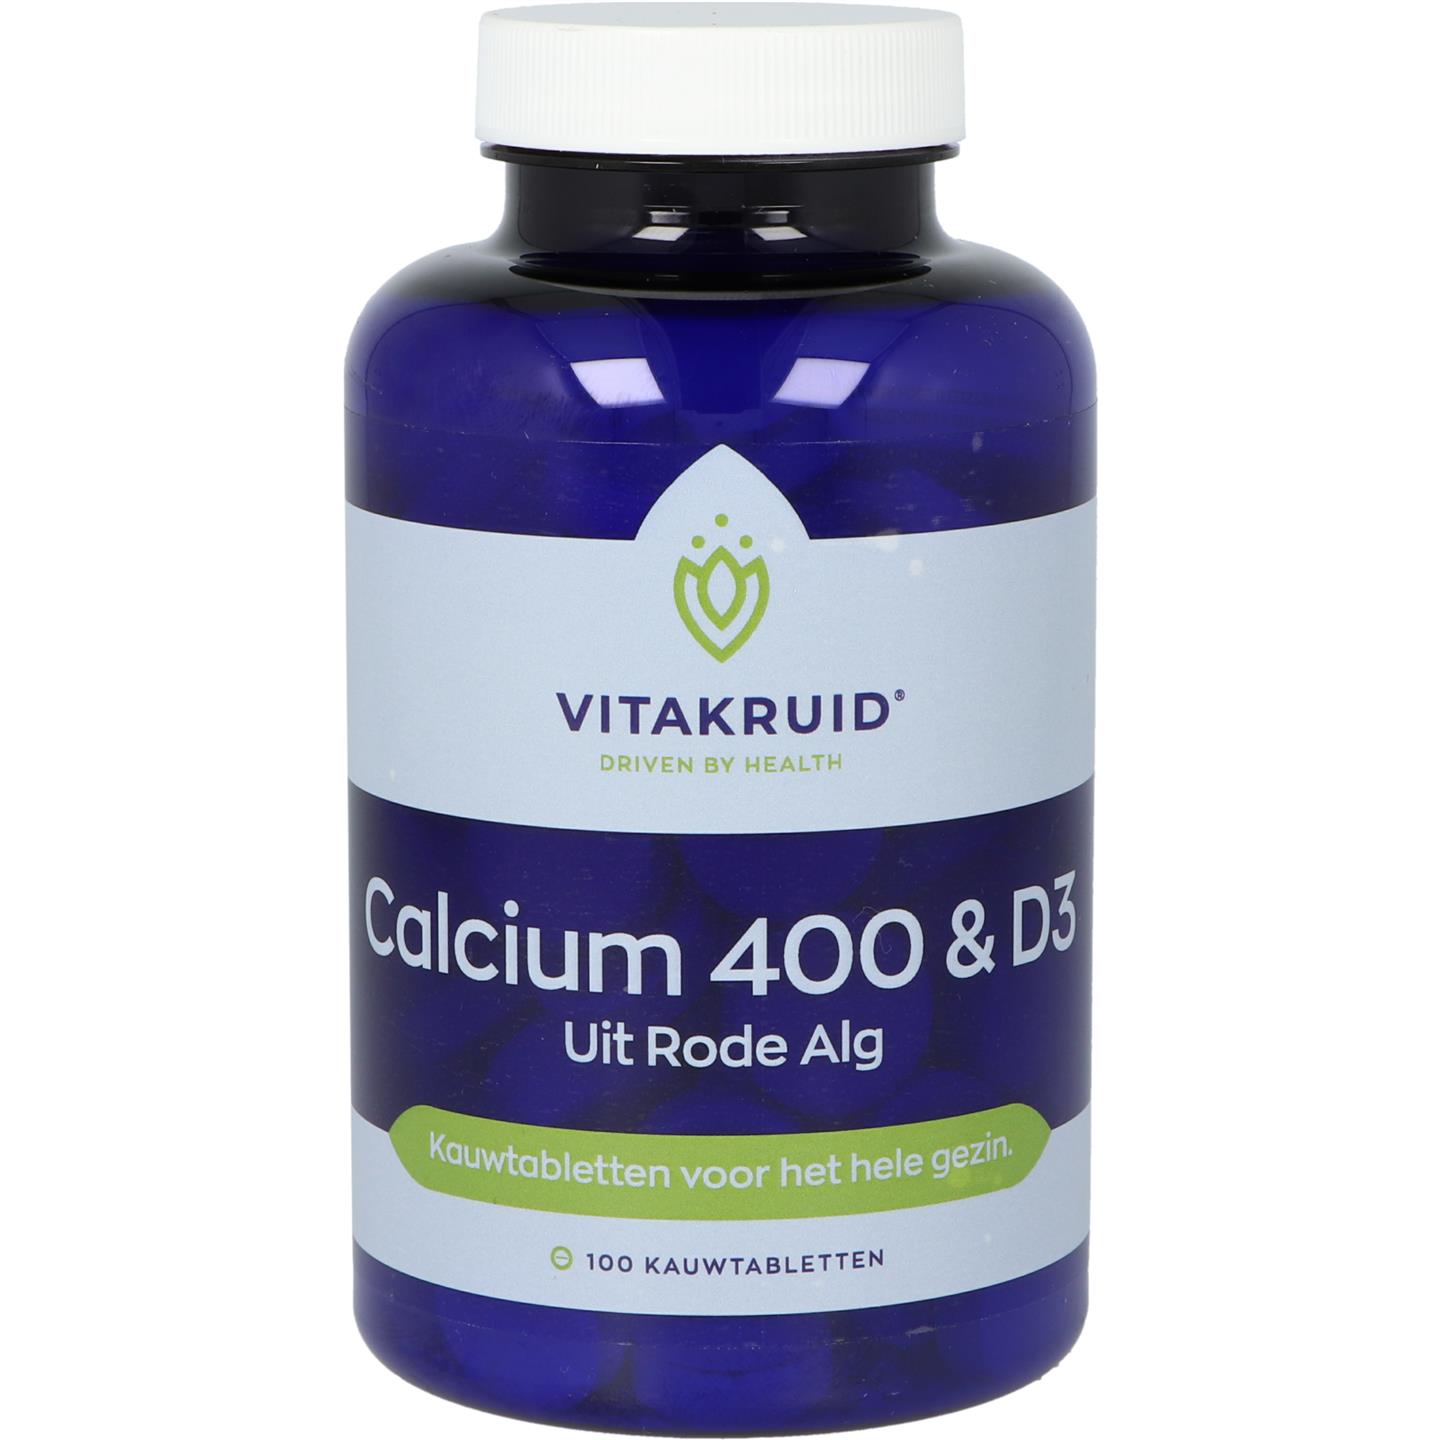 Calcium 400 & D3